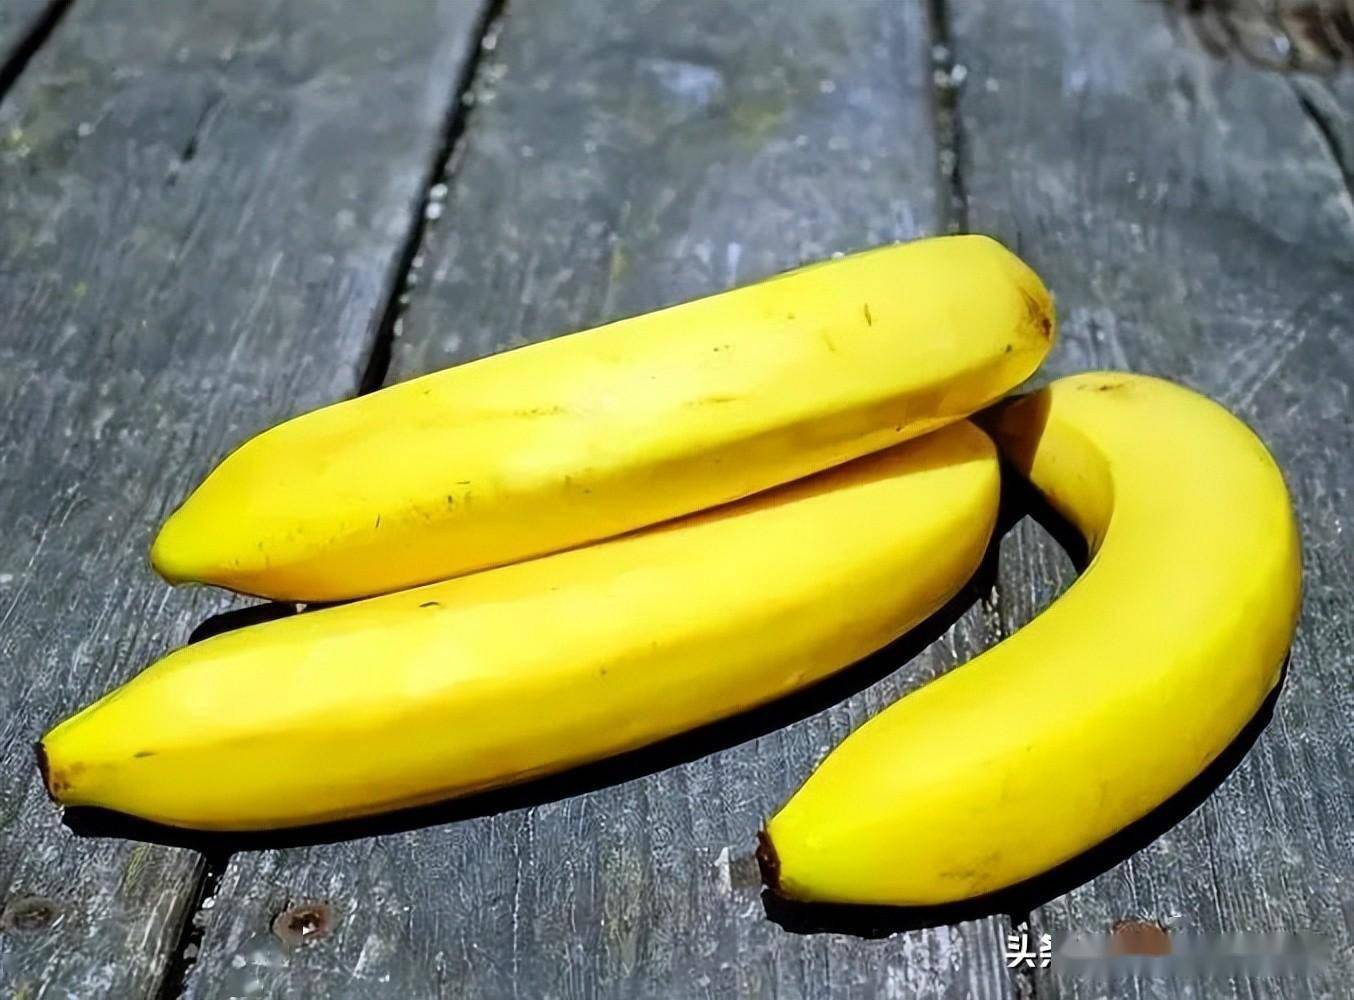 香蕉内部结构图和讲解图片